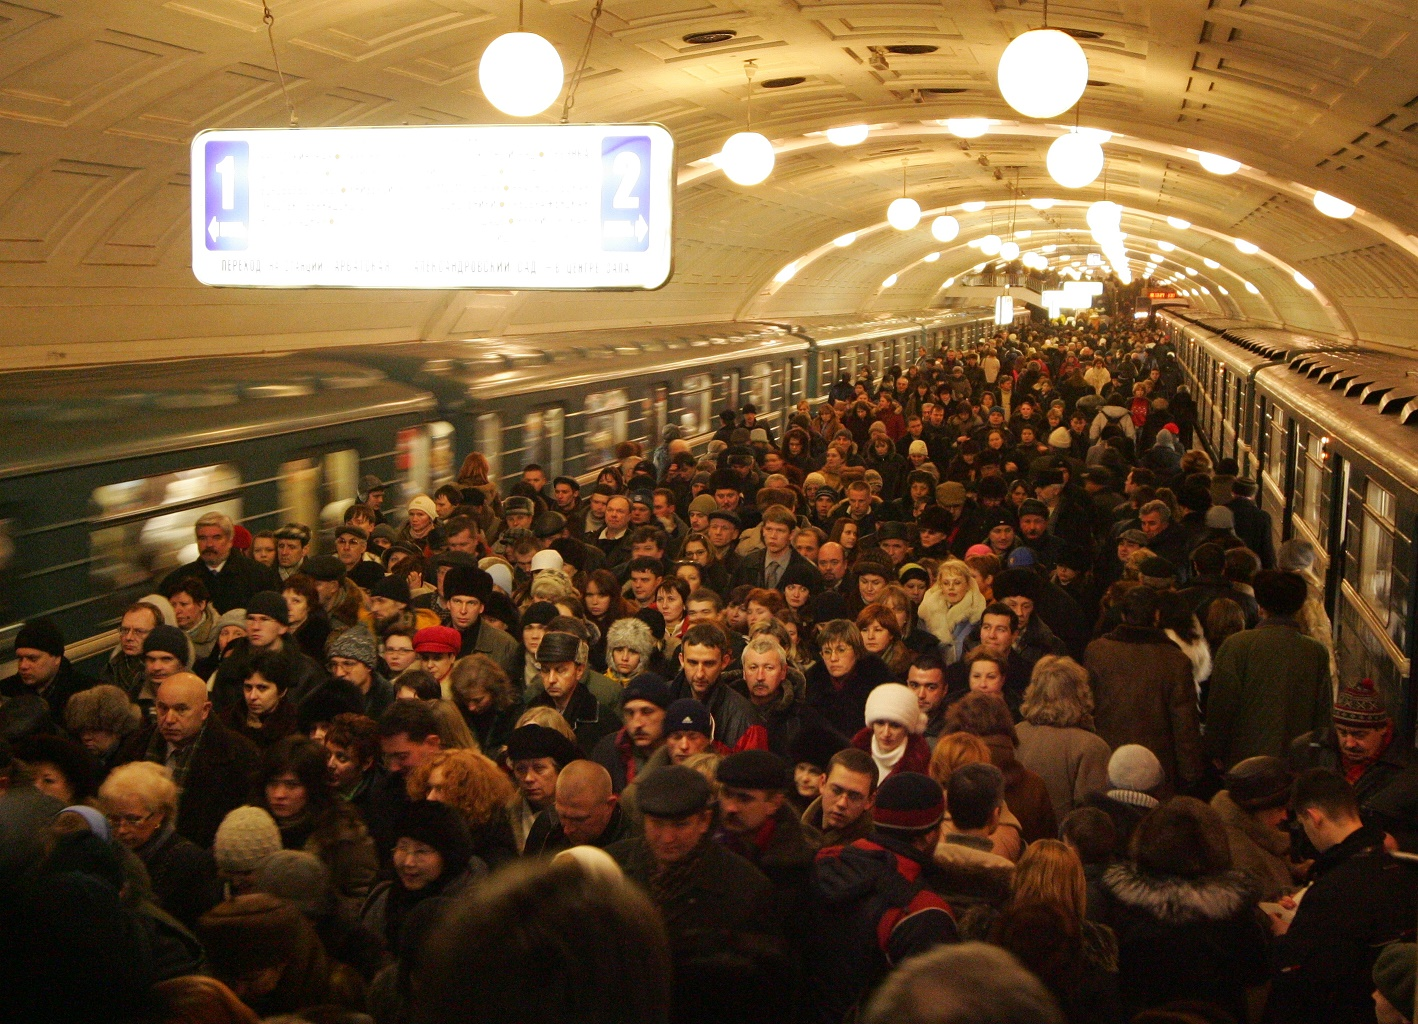 Час пик в метро в Москве. Библиотека Ленина метро давка. Московское метро в час пик 2021. Люди в метро в час пик.